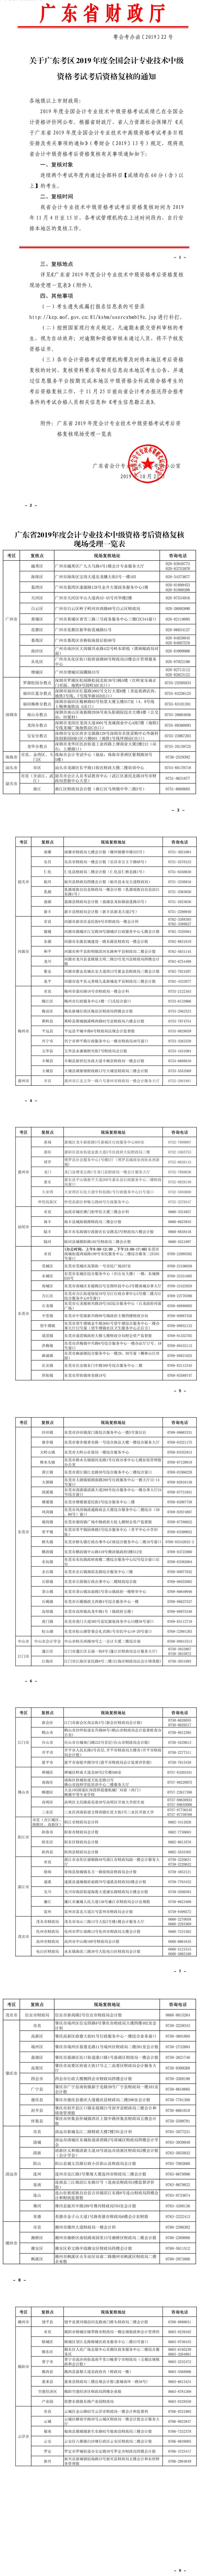 广东2019年中级会计职称考后资格复核的通知